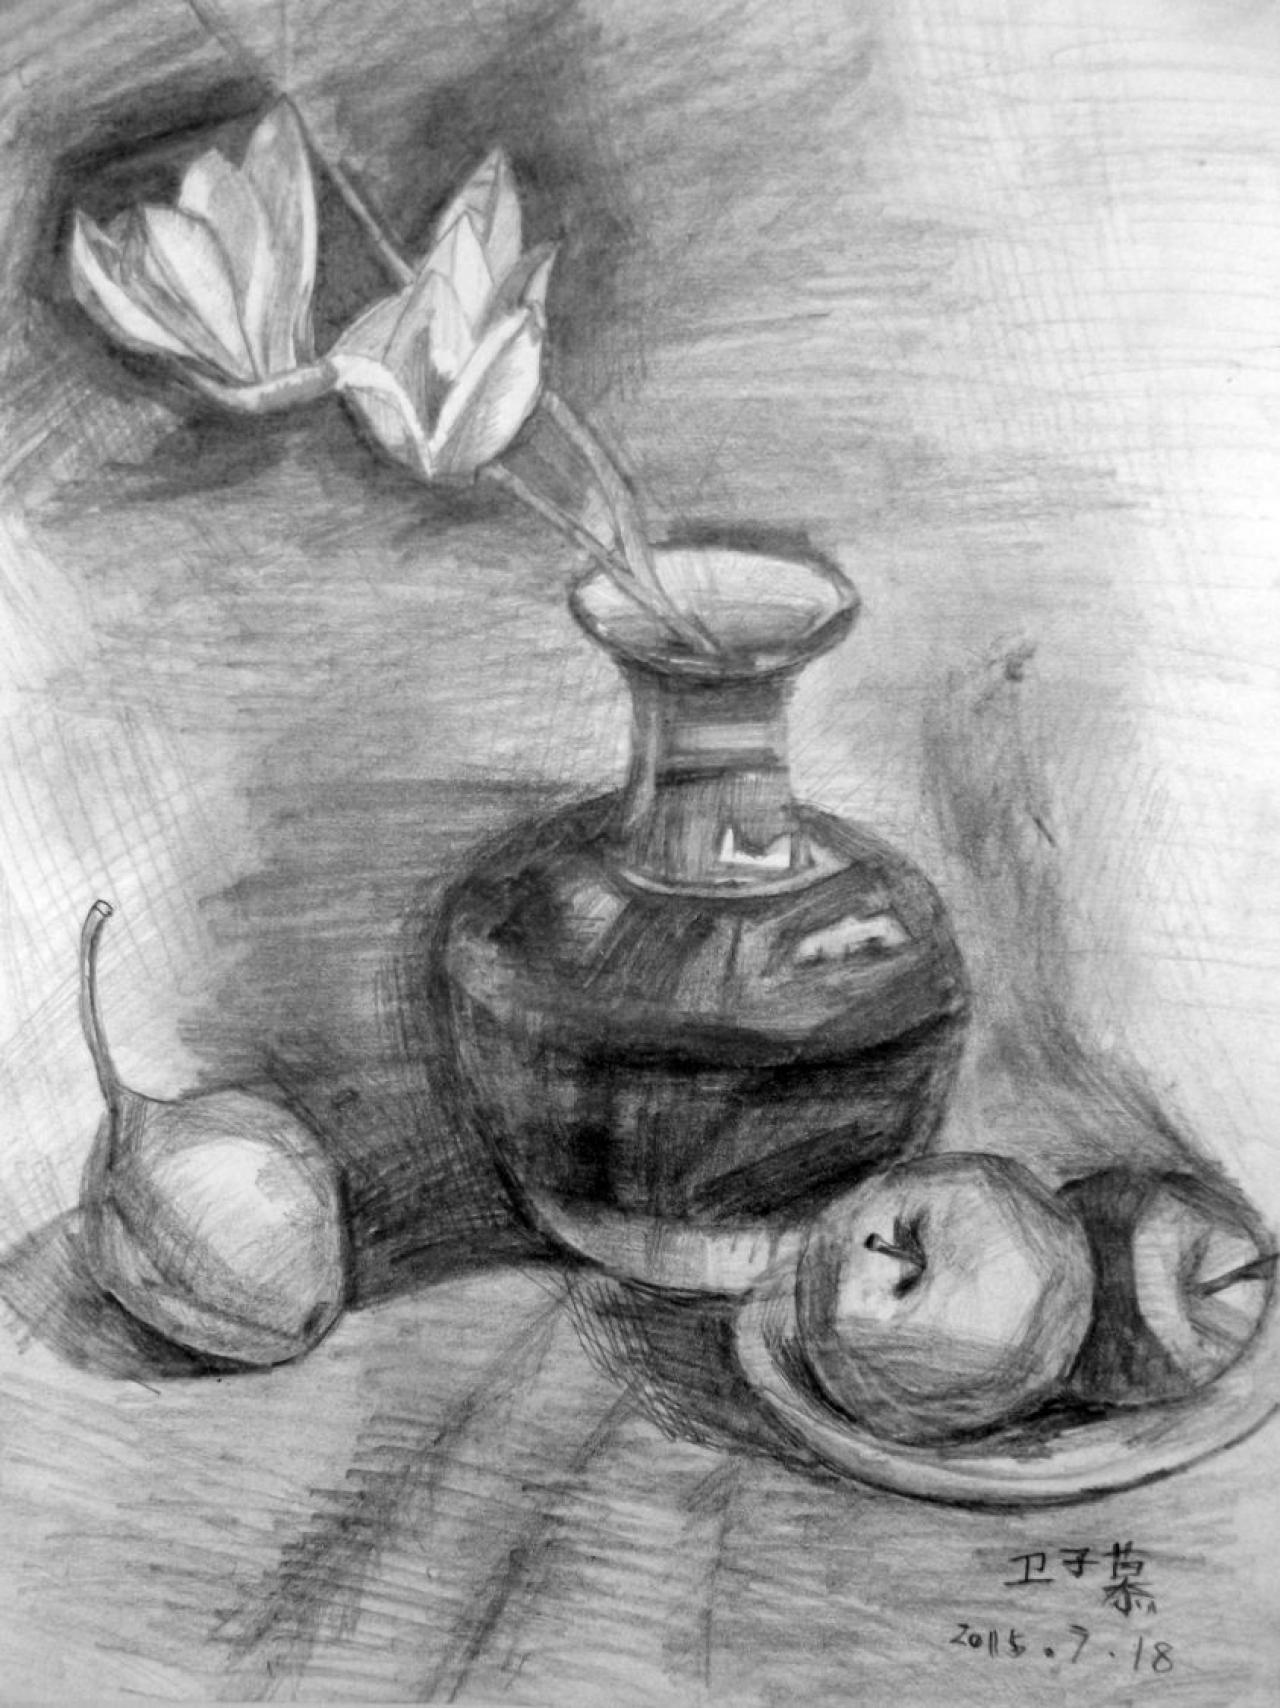 花瓶、梨、苹果、盘子 静物素描 卫子慕画